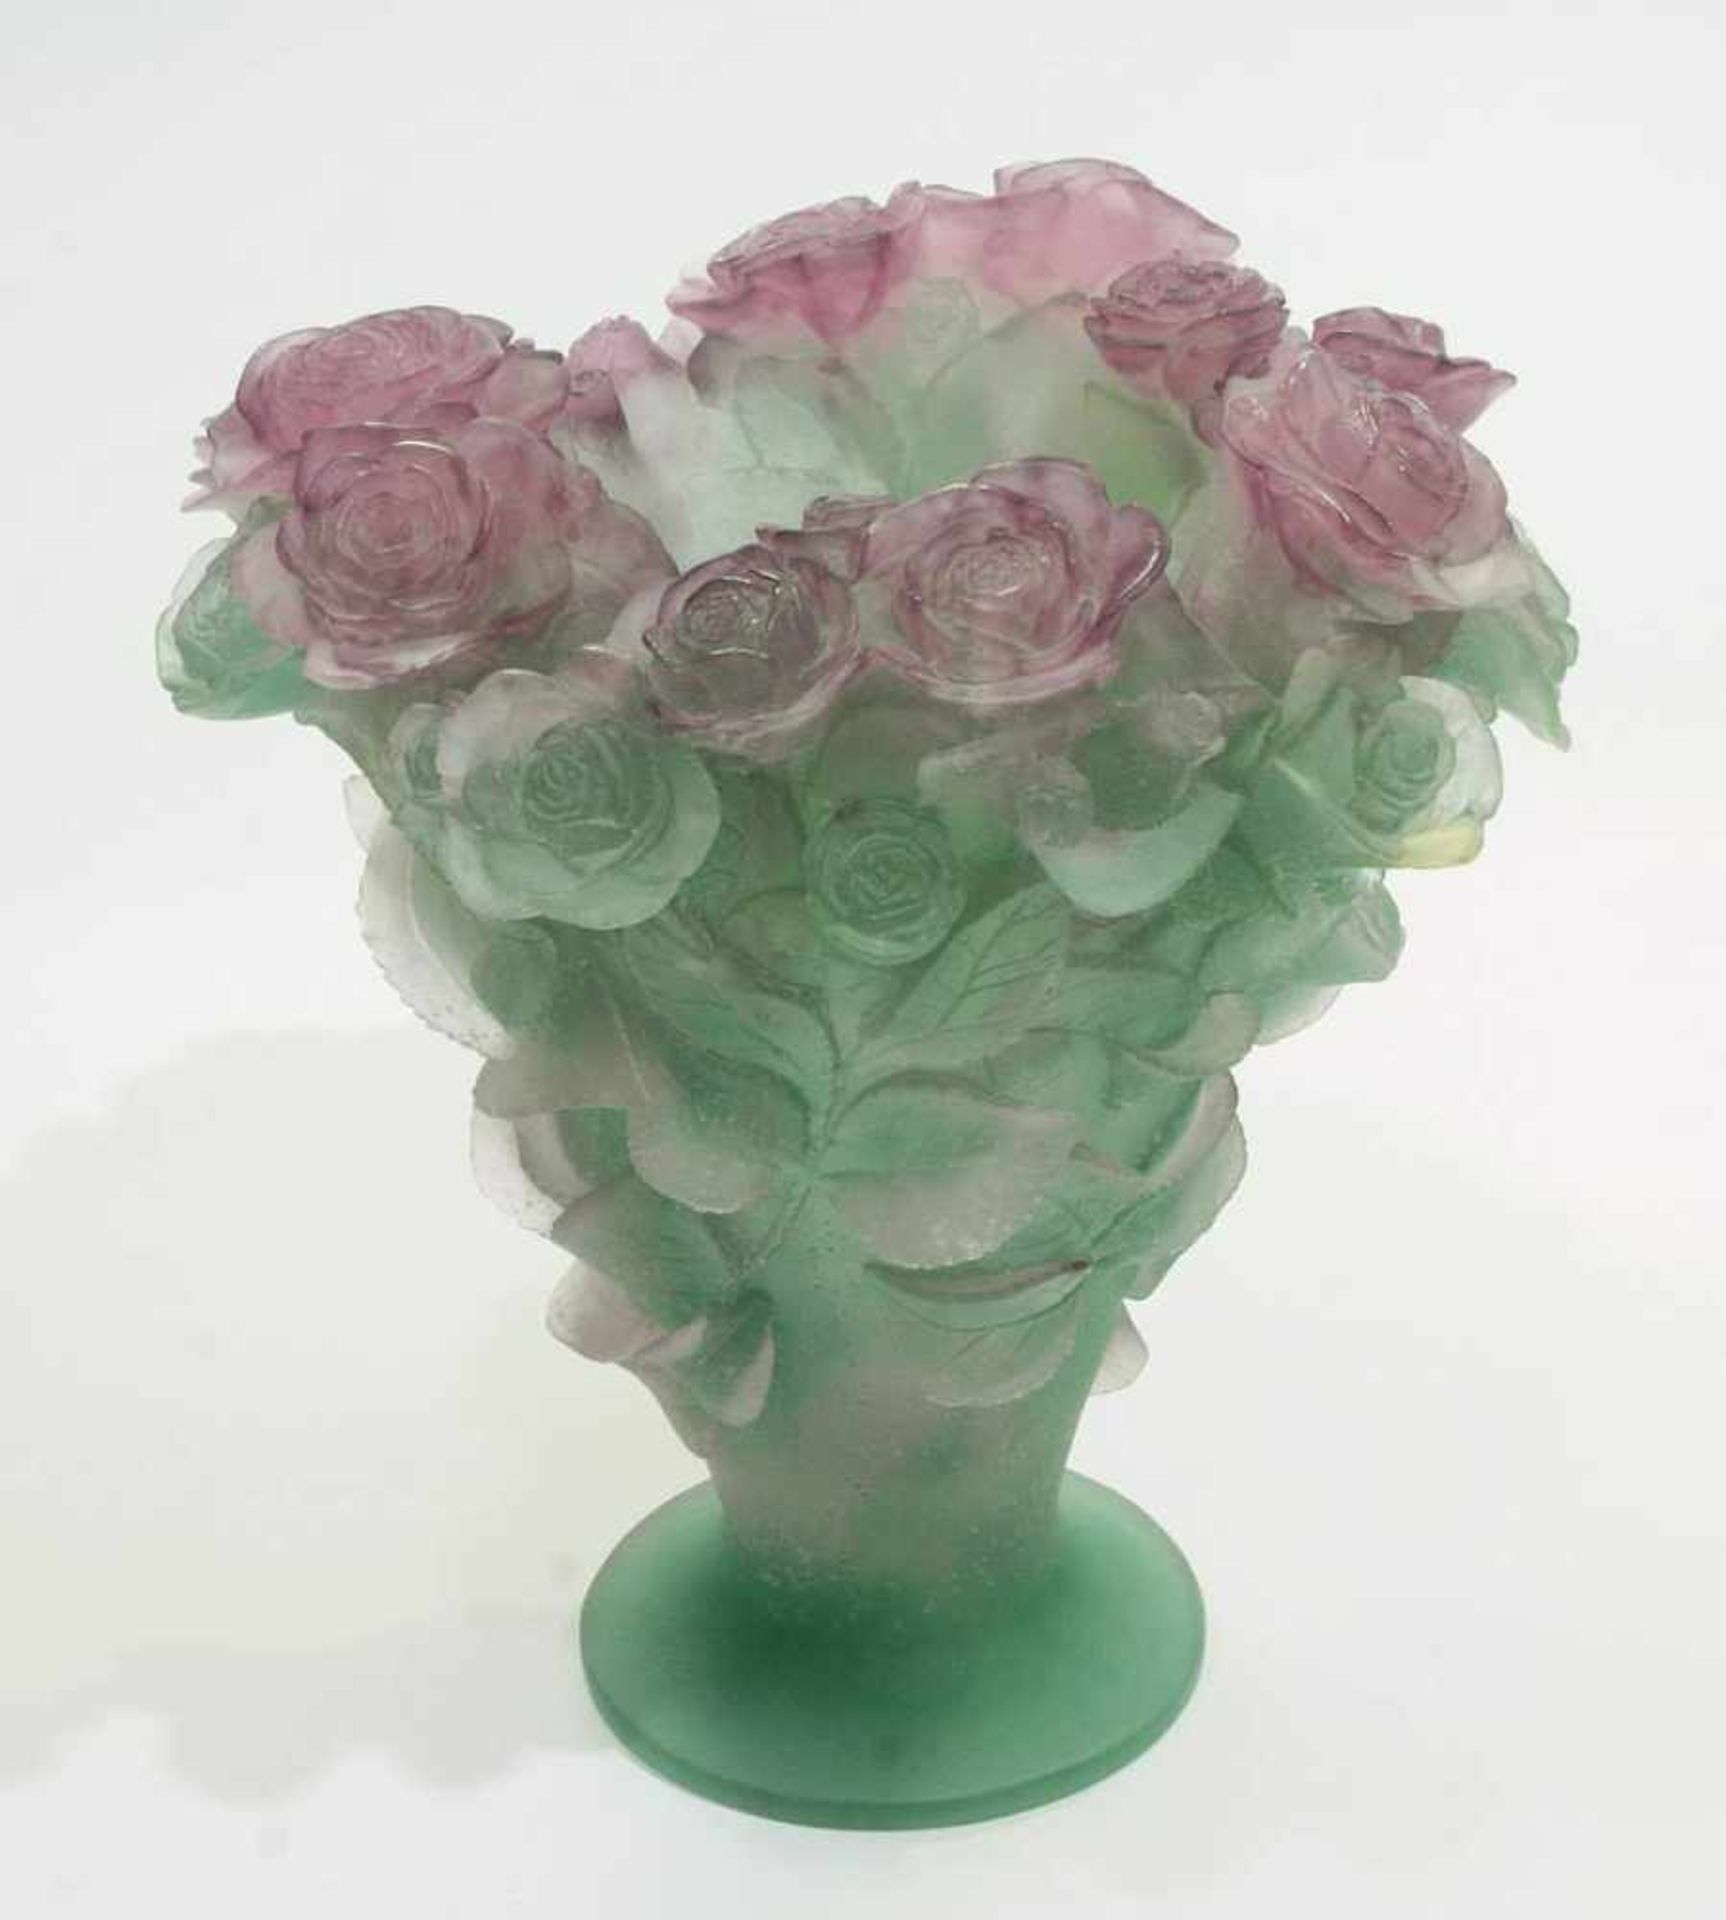 DAUM Pate-de-Verre "Roses" Vase. France. DAUM Pate-de-Verre "Roses" Vase. France. 20. Jahrhundert. - Image 3 of 6